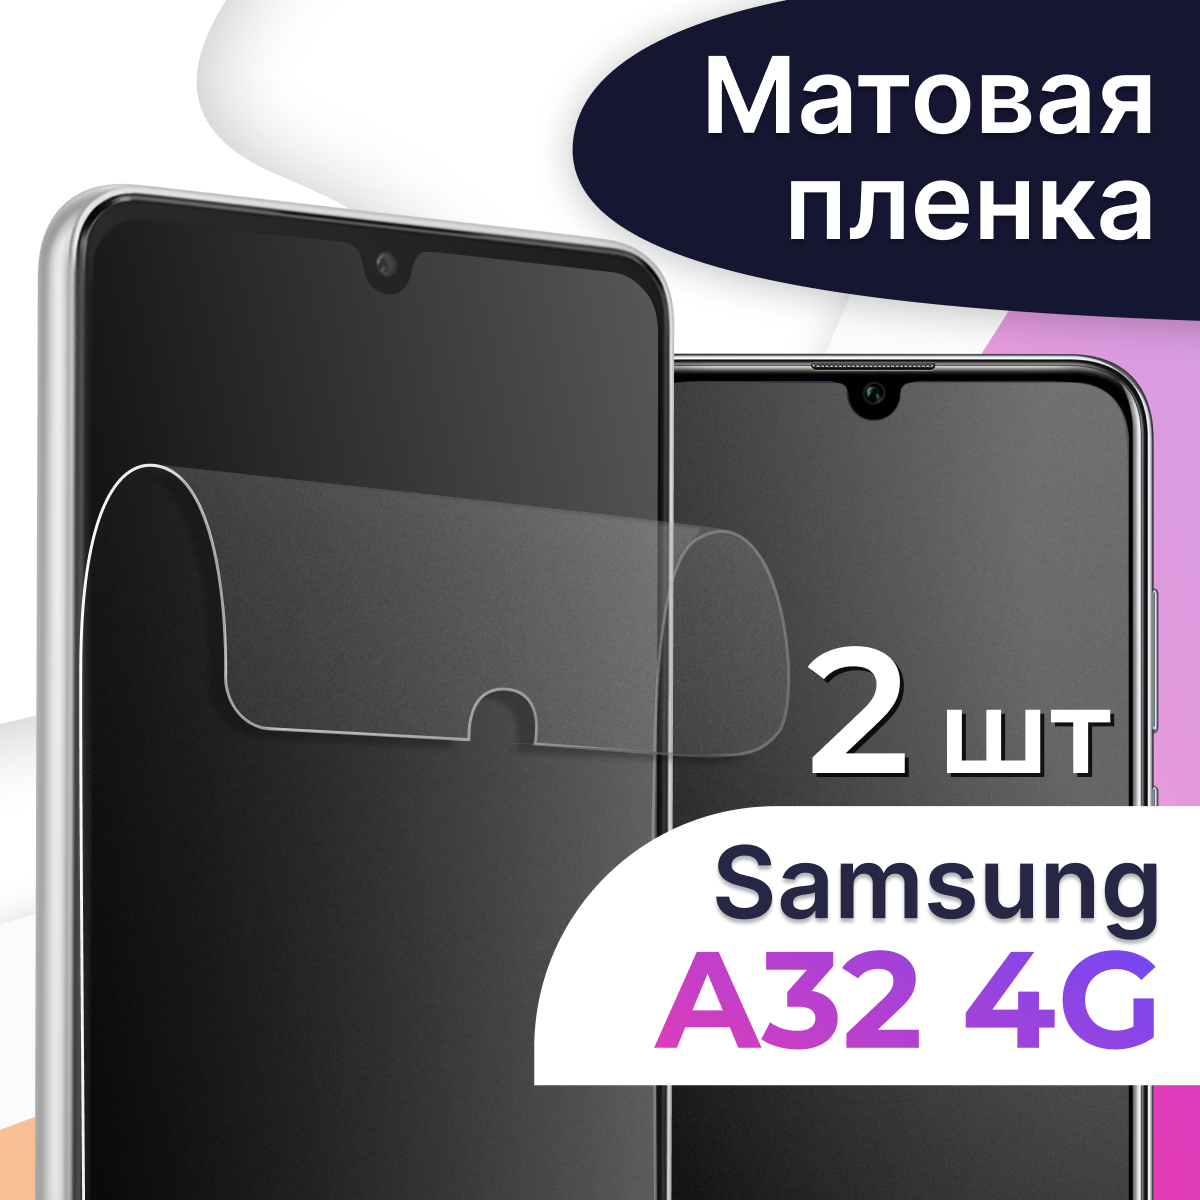 Комплект 2 шт. Матовая пленка на телефон Samsung Galaxy A32 4G / Гидрогелевая противоударная пленка для Самсунг Галакси А32 4Г/ Защитная пленка